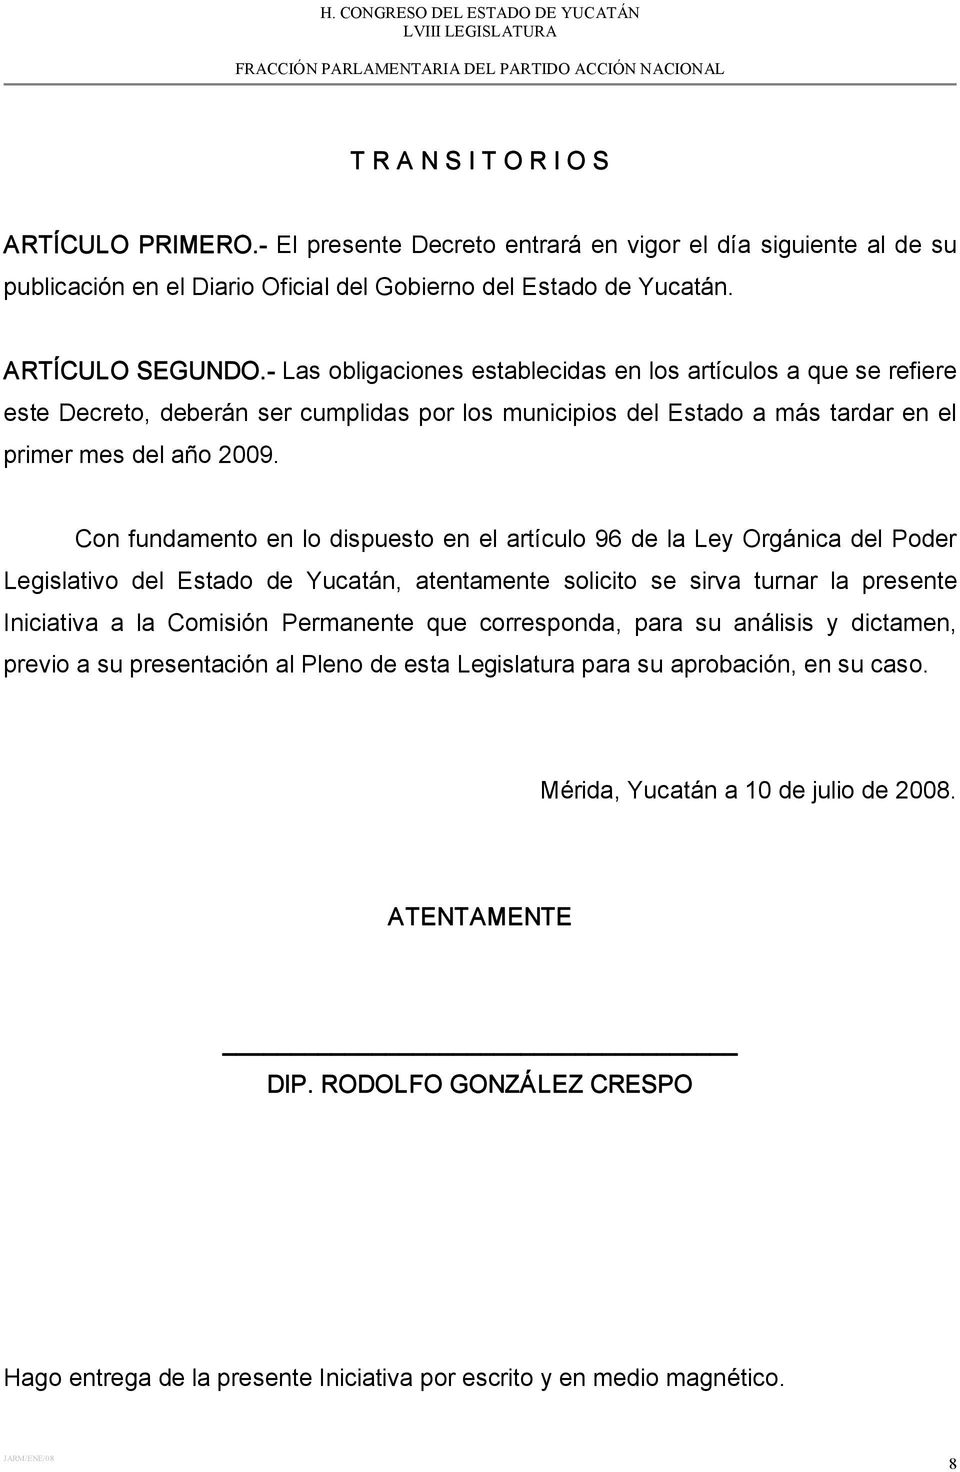 Con fundamento en lo dispuesto en el artículo 96 de la Ley Orgánica del Poder Legislativo del Estado de Yucatán, atentamente solicito se sirva turnar la presente Iniciativa a la Comisión Permanente